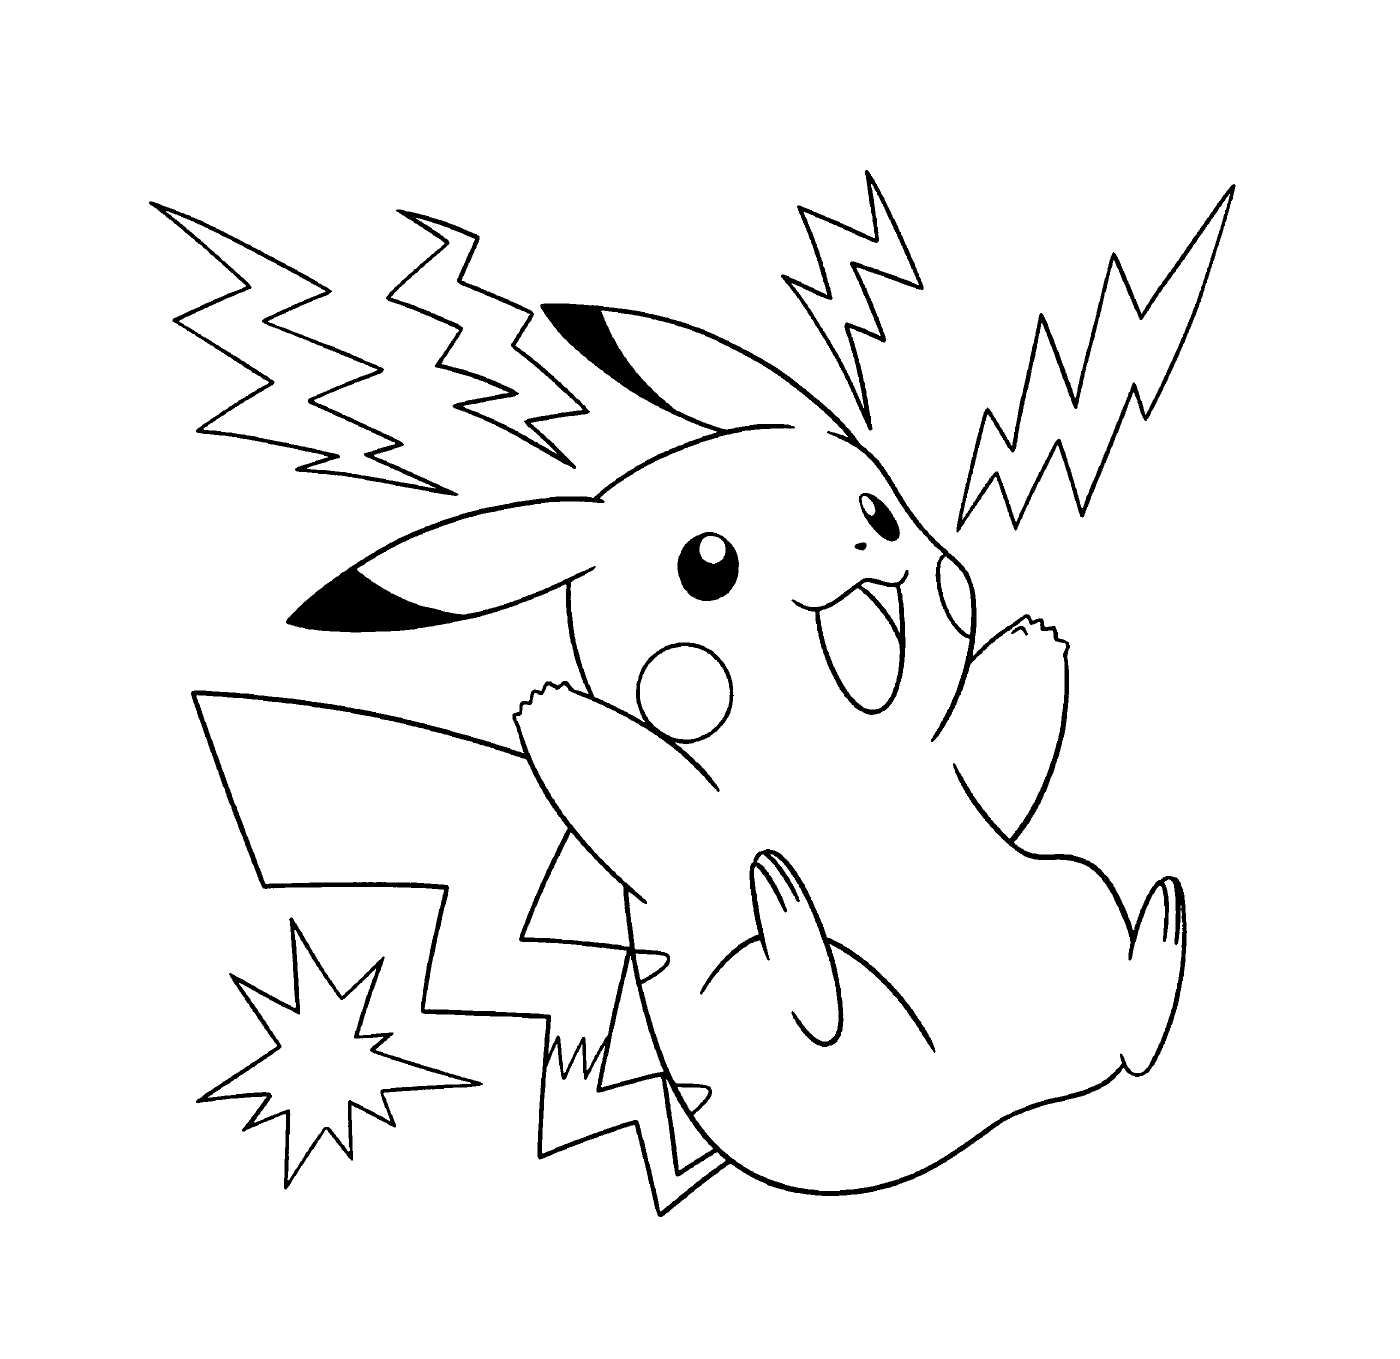  Pikachu, elétrico e energético 